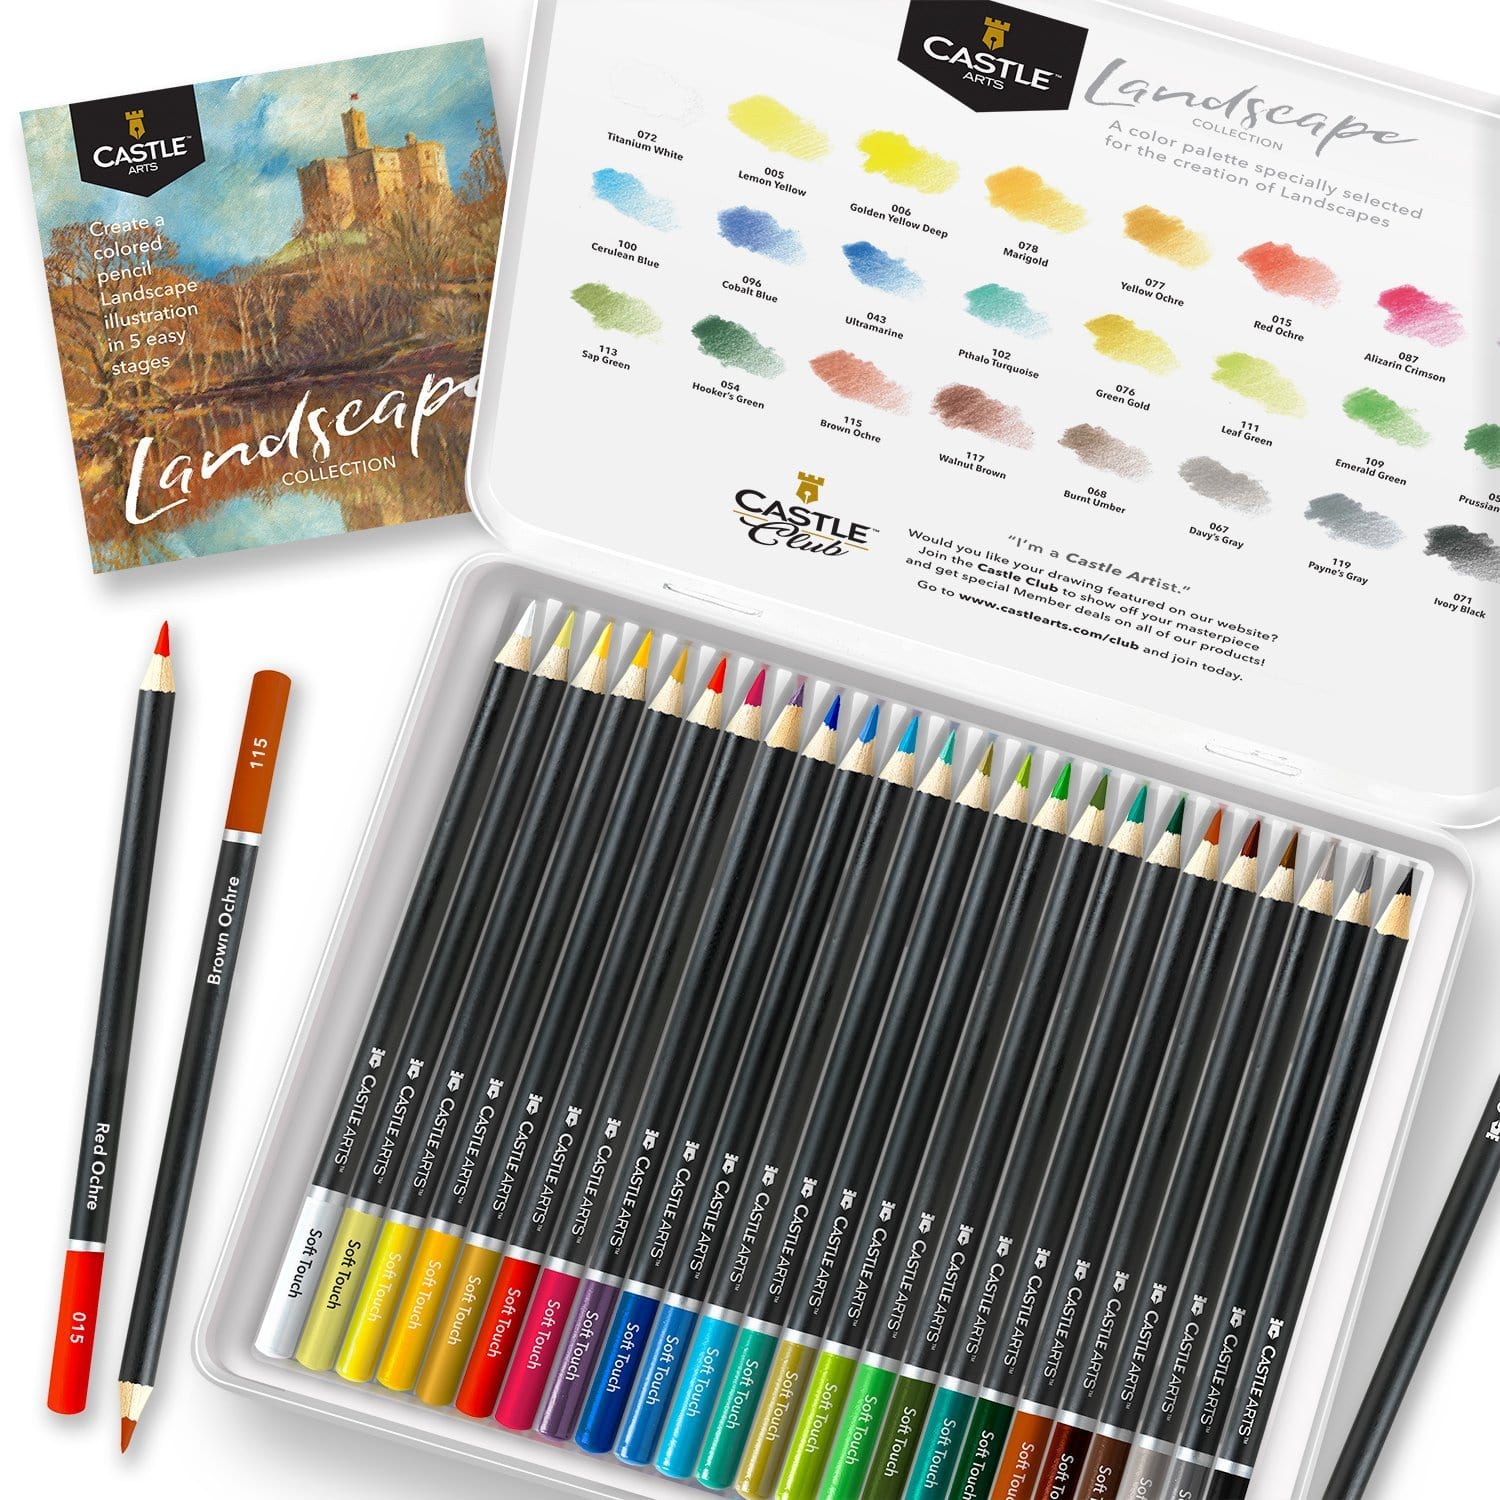 Seaside Garden 24 Watercolor Pencils & Pad